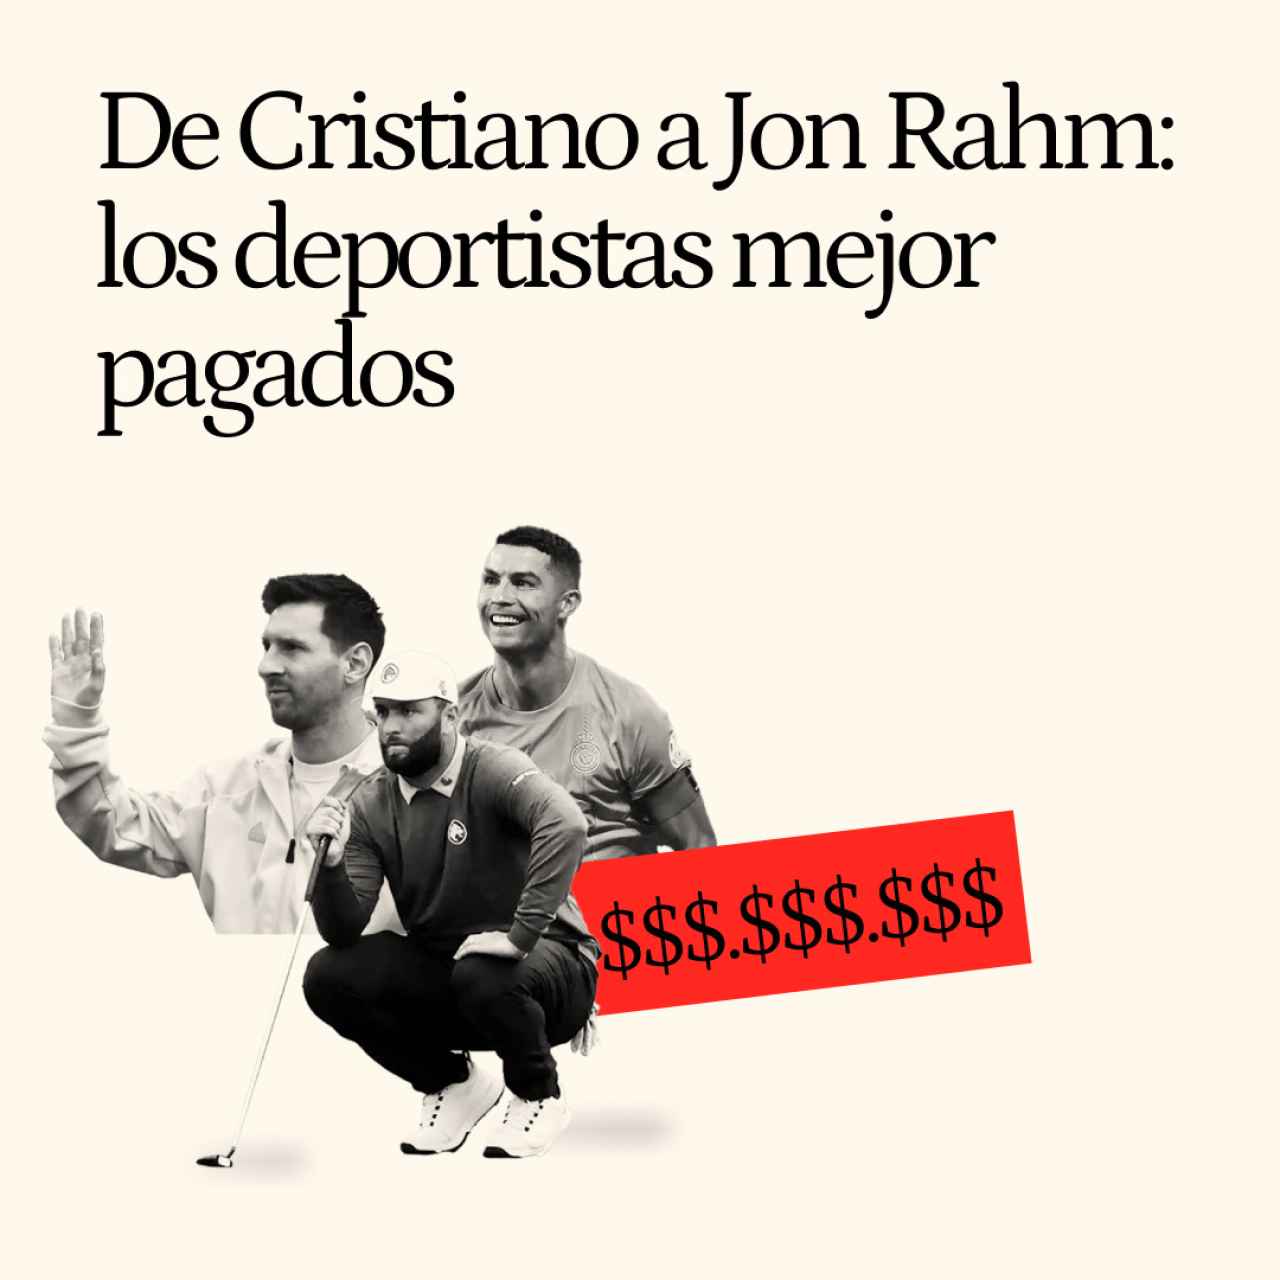 De Cristiano a la sorpresa de Jon Rahm: la lista Forbes de los deportistas mejor pagados del mundo